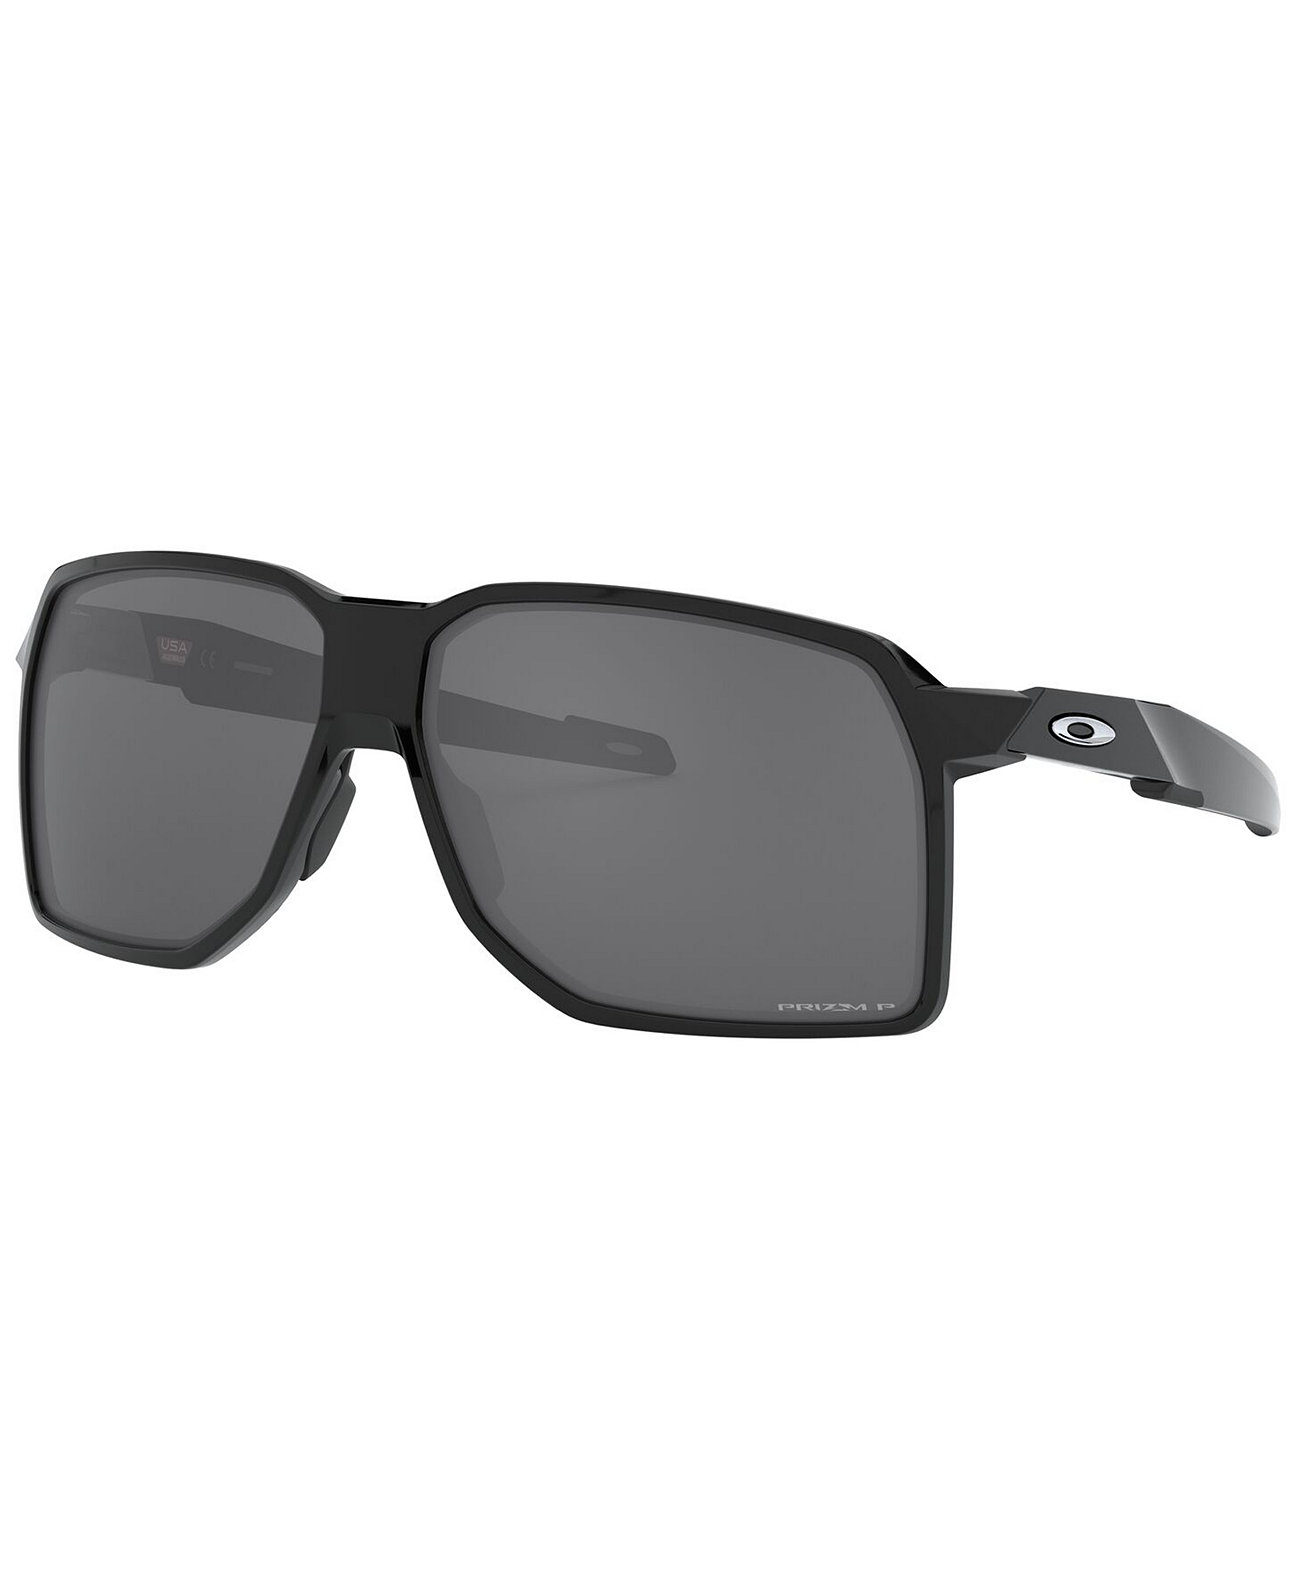 Поляризованные солнцезащитные очки Portal, OO9446 62 Oakley